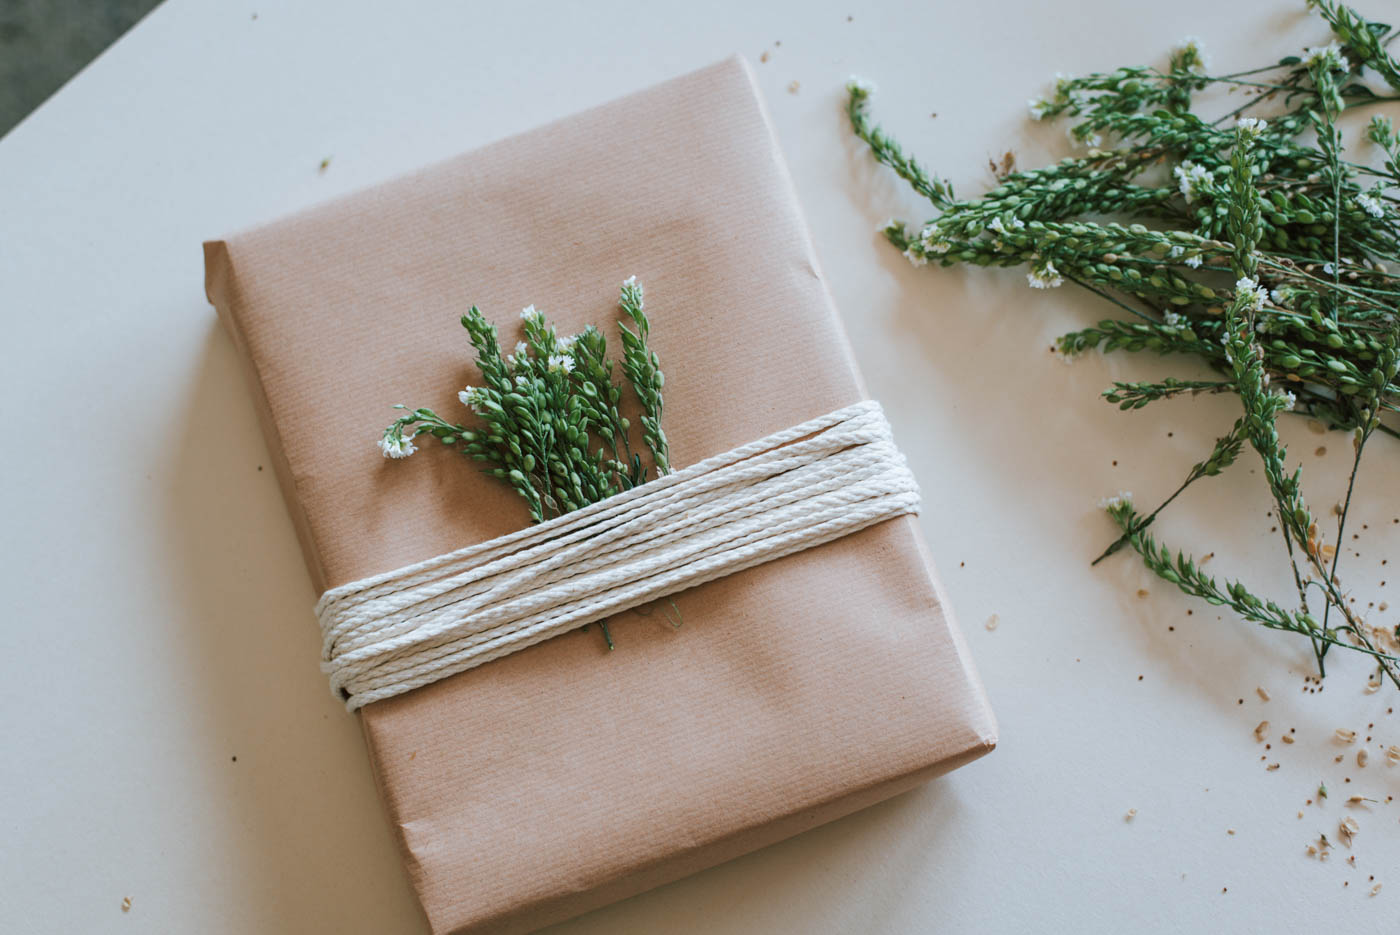 DIY Geschenke herbstlich verpacken mit Hagebutten, Zweigen und Gräsern. Geburtstagskinder im Herbst überraschen. 3 schnelle DIY Ideen